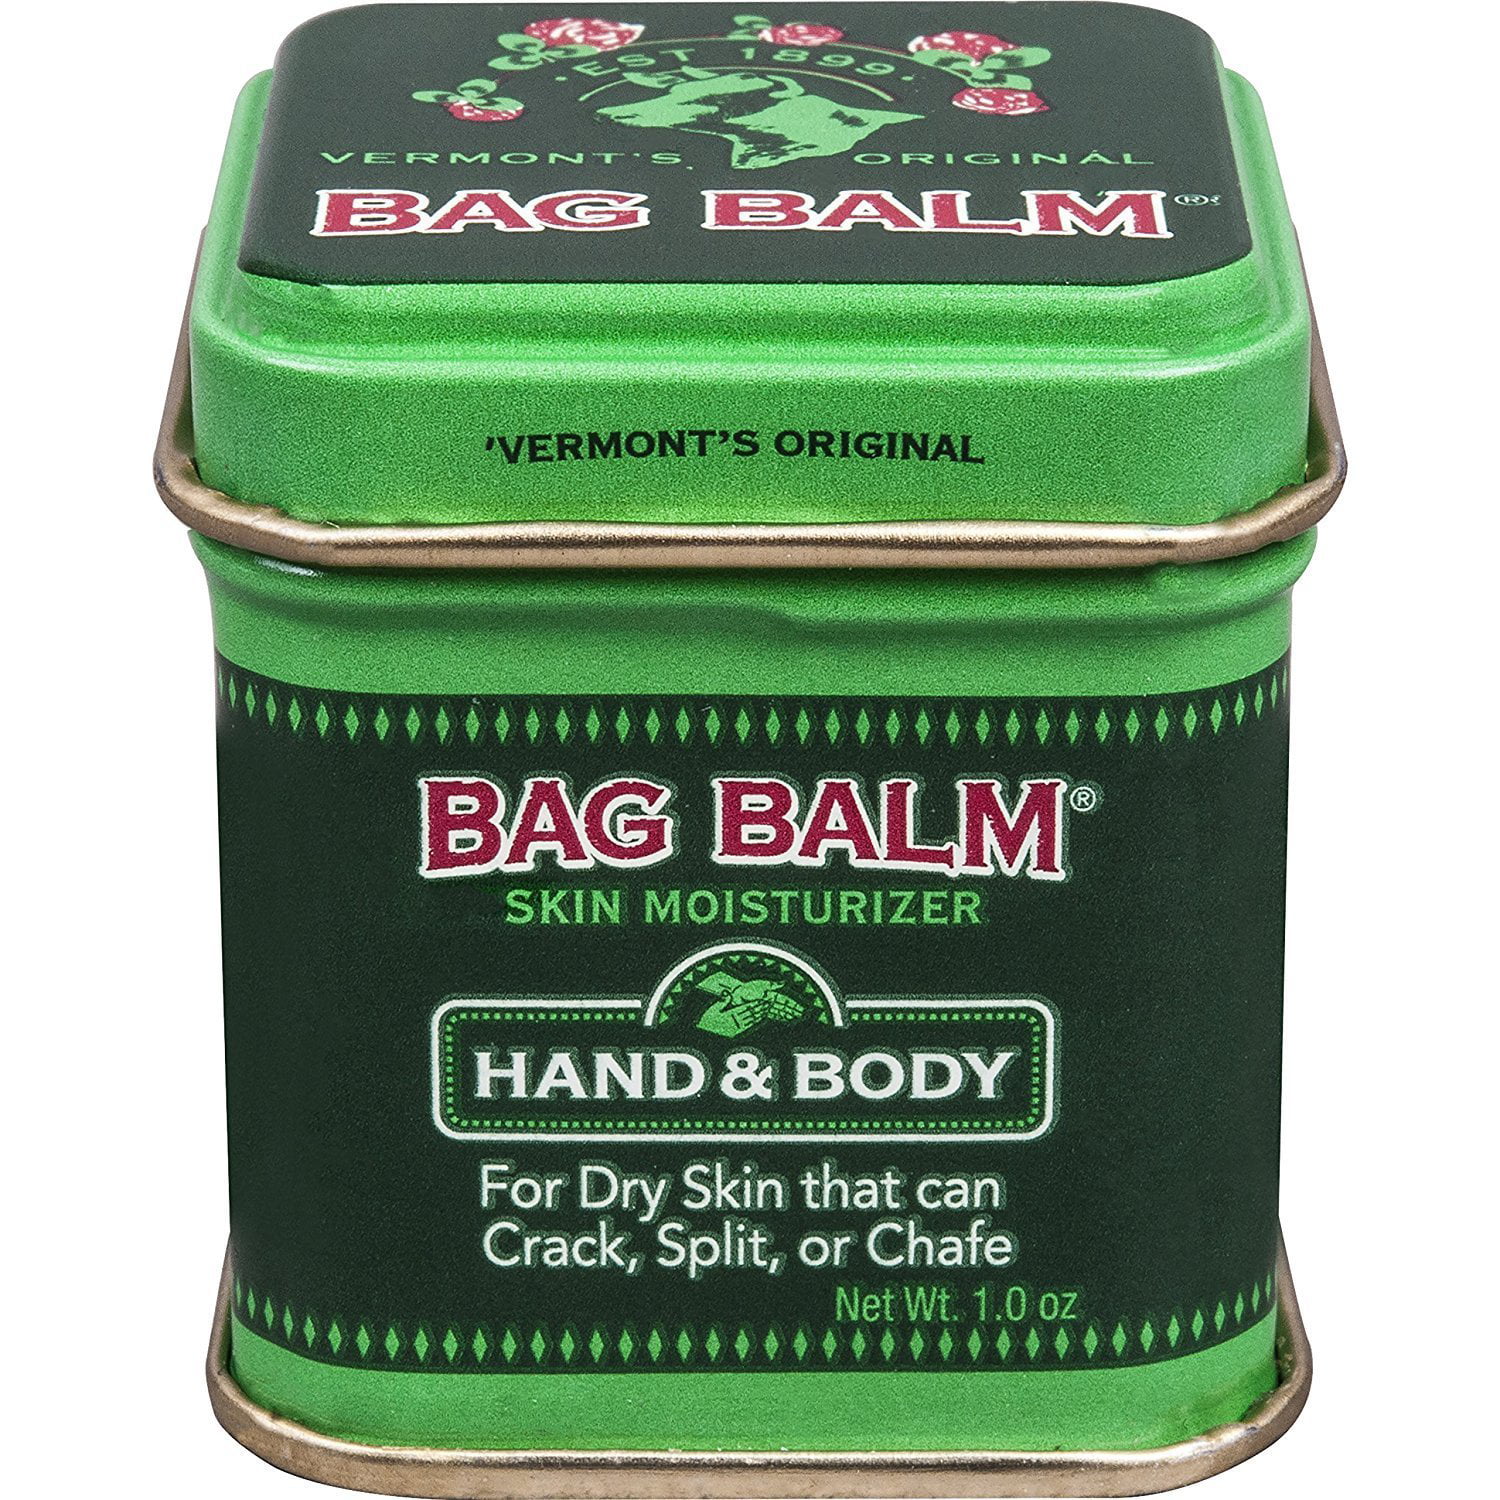 Bag Balm Ointment 1 oz (Pack of 3) - Walmart.com - Walmart.com